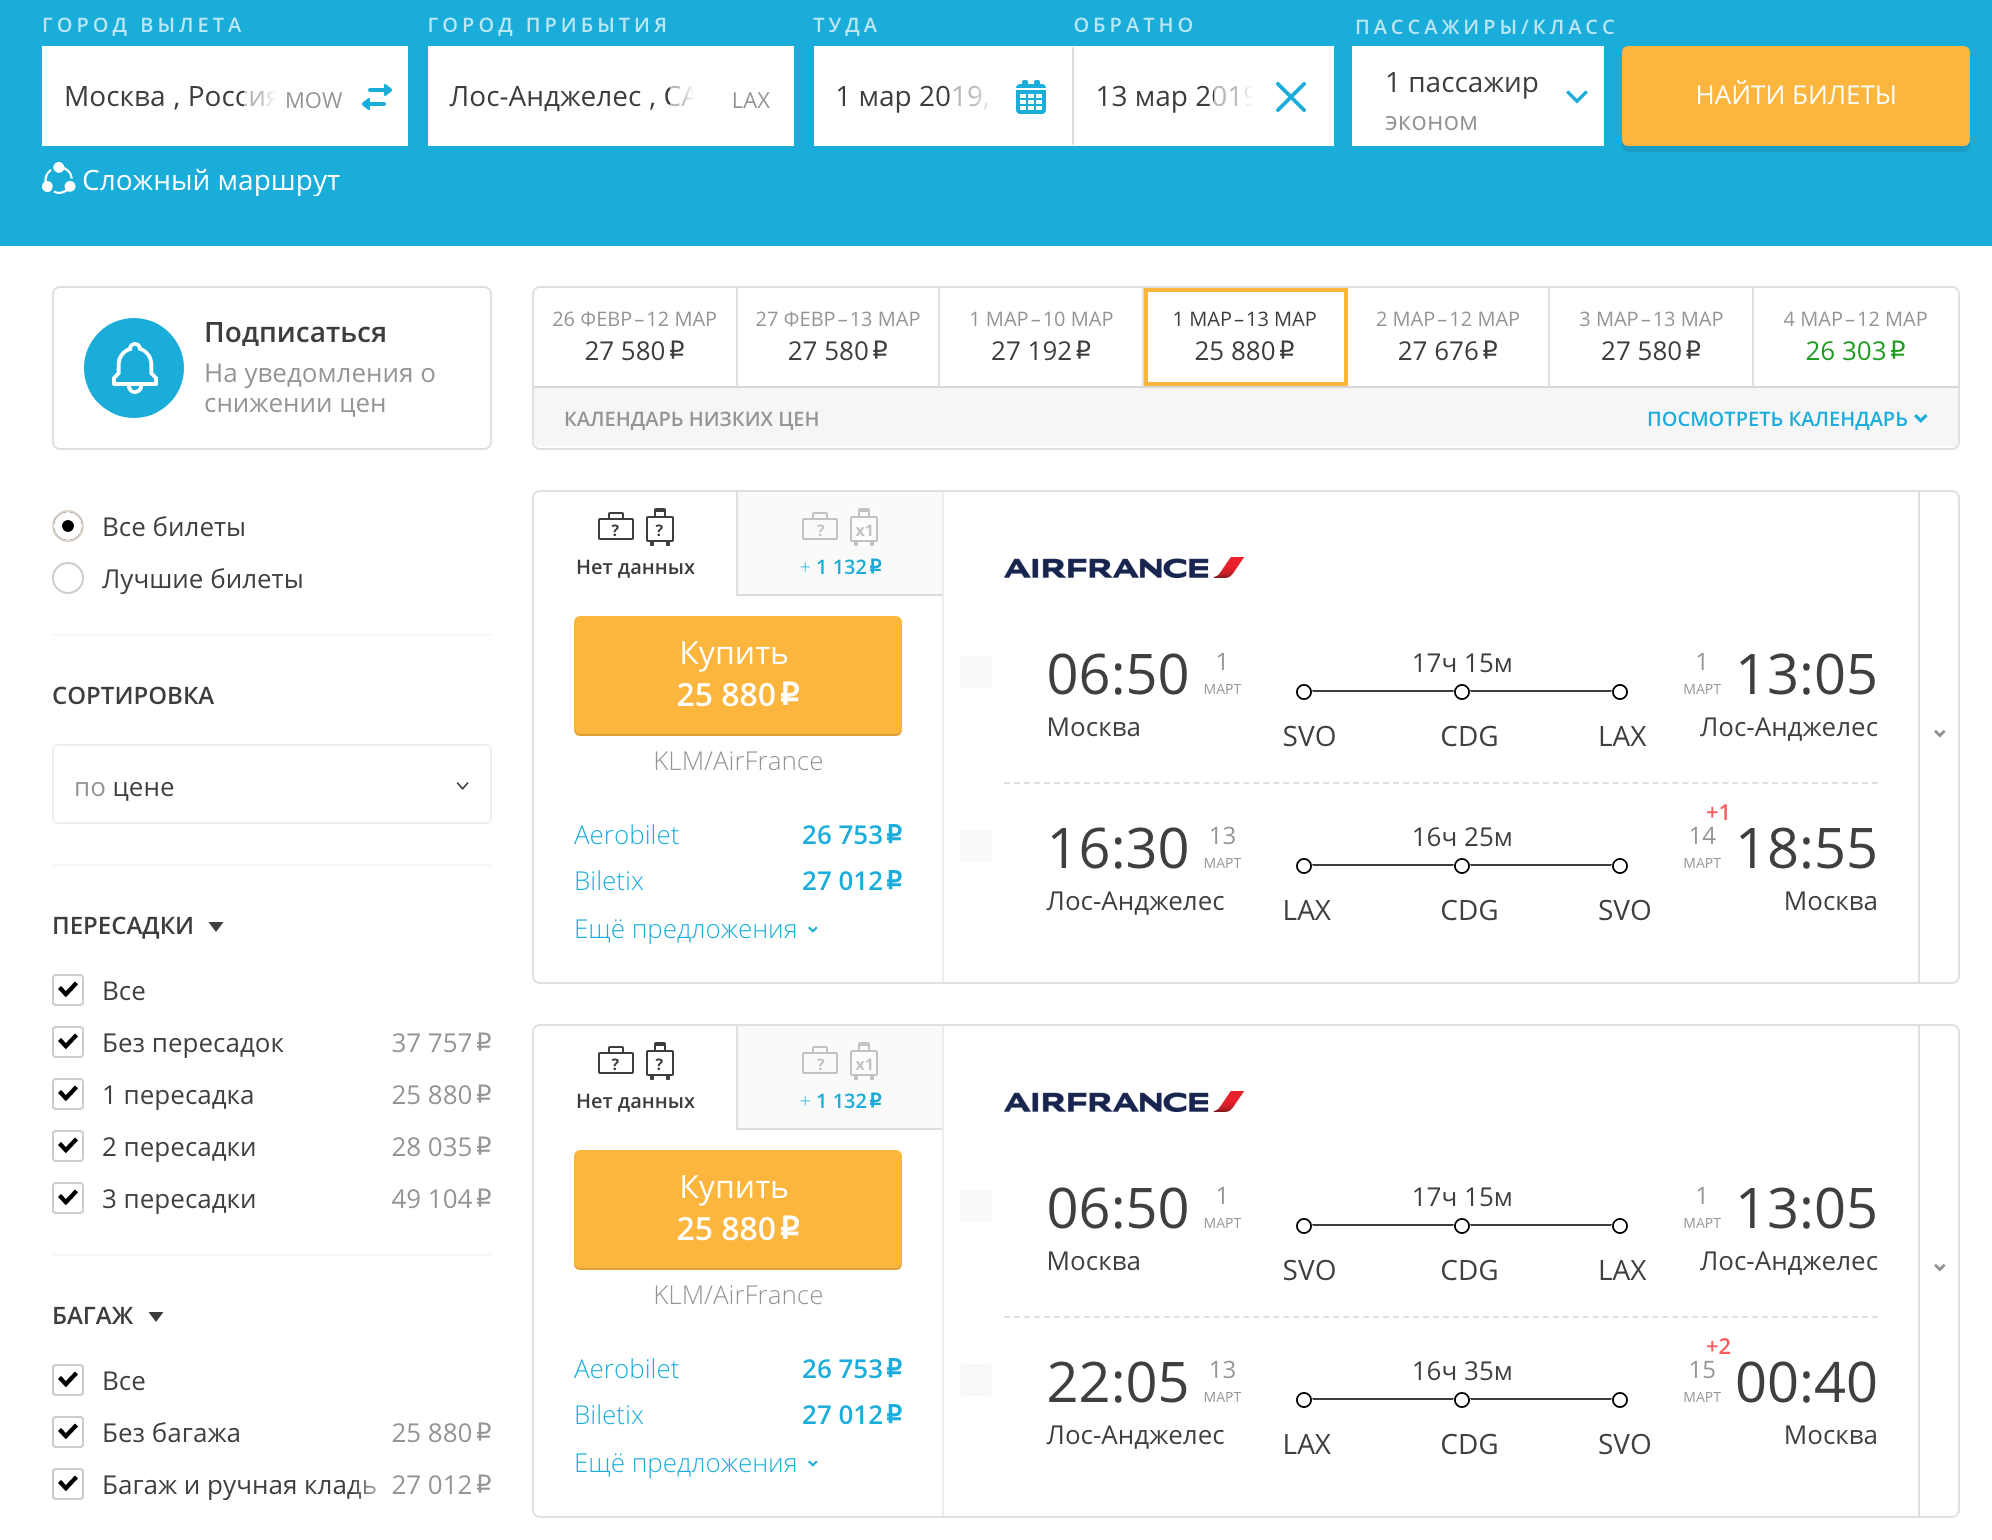 Авиабилеты москва запорожье прямой рейс цена самый дешевый билеты на самолет в мире